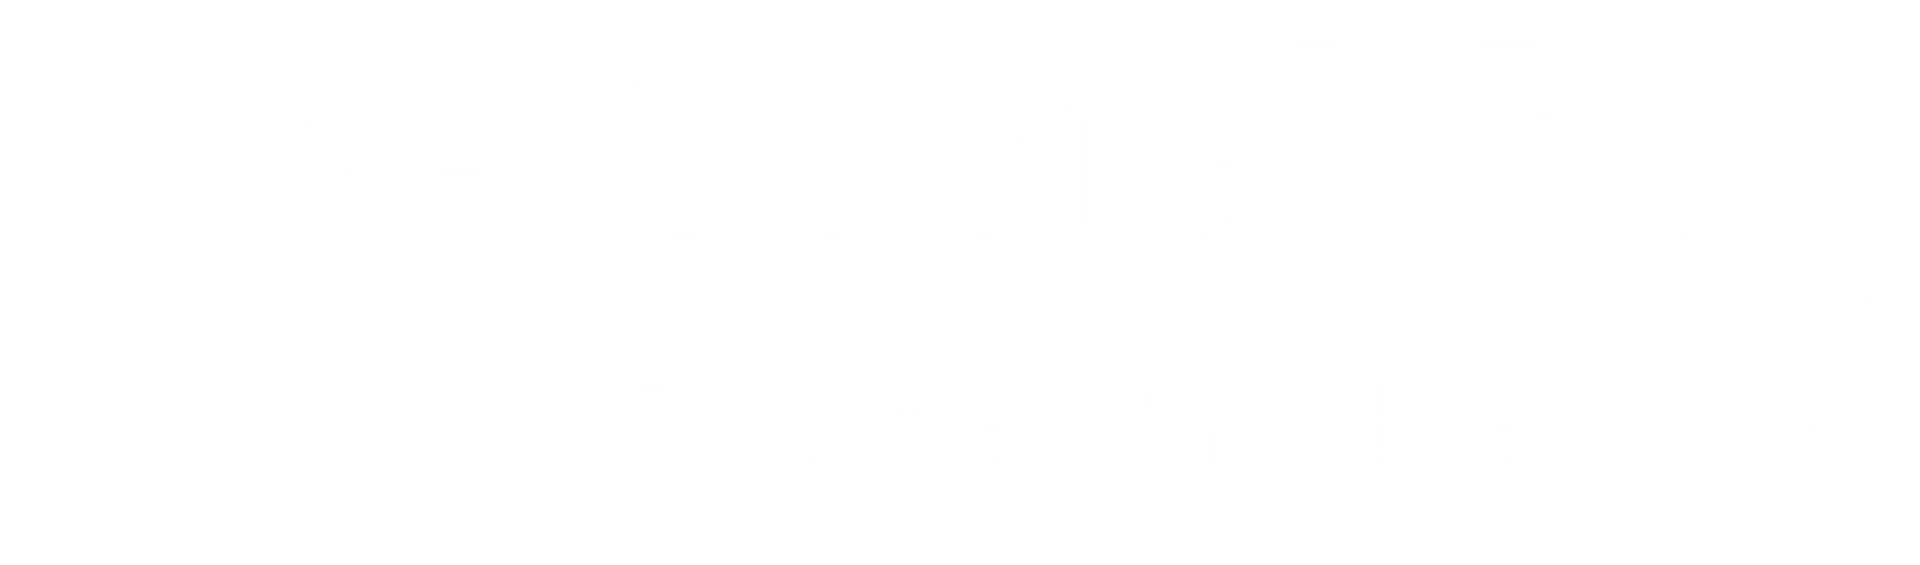 "Social Bug" Digital Media, LLC with ladybug logo.